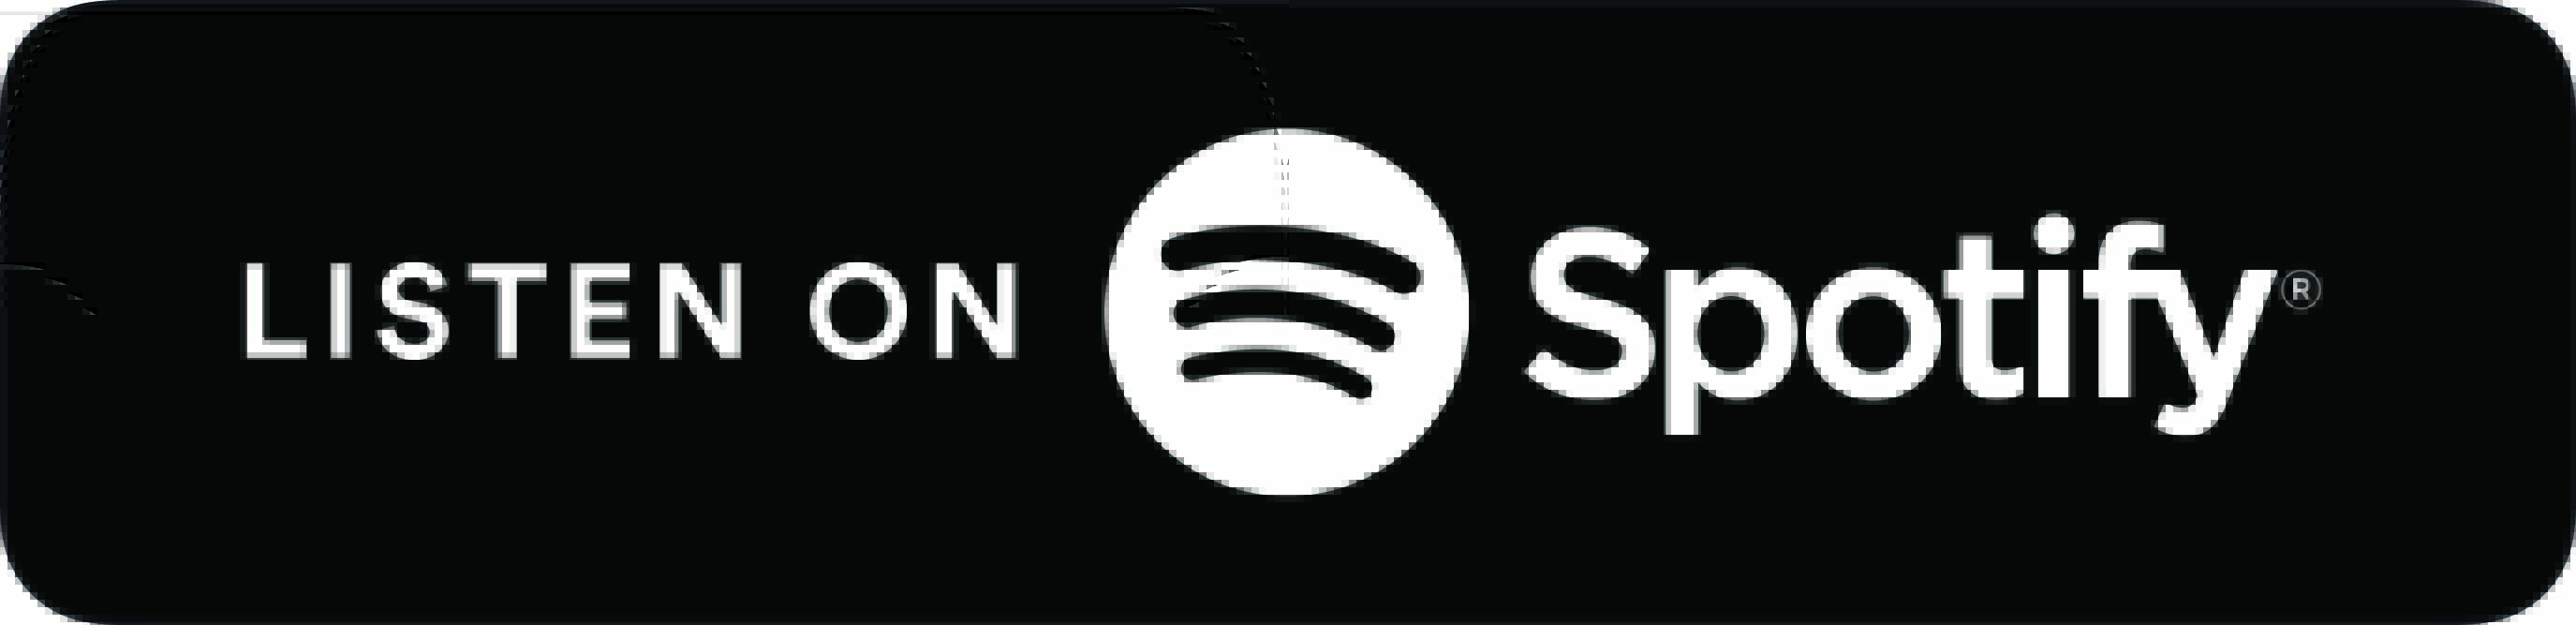 BE Spotify